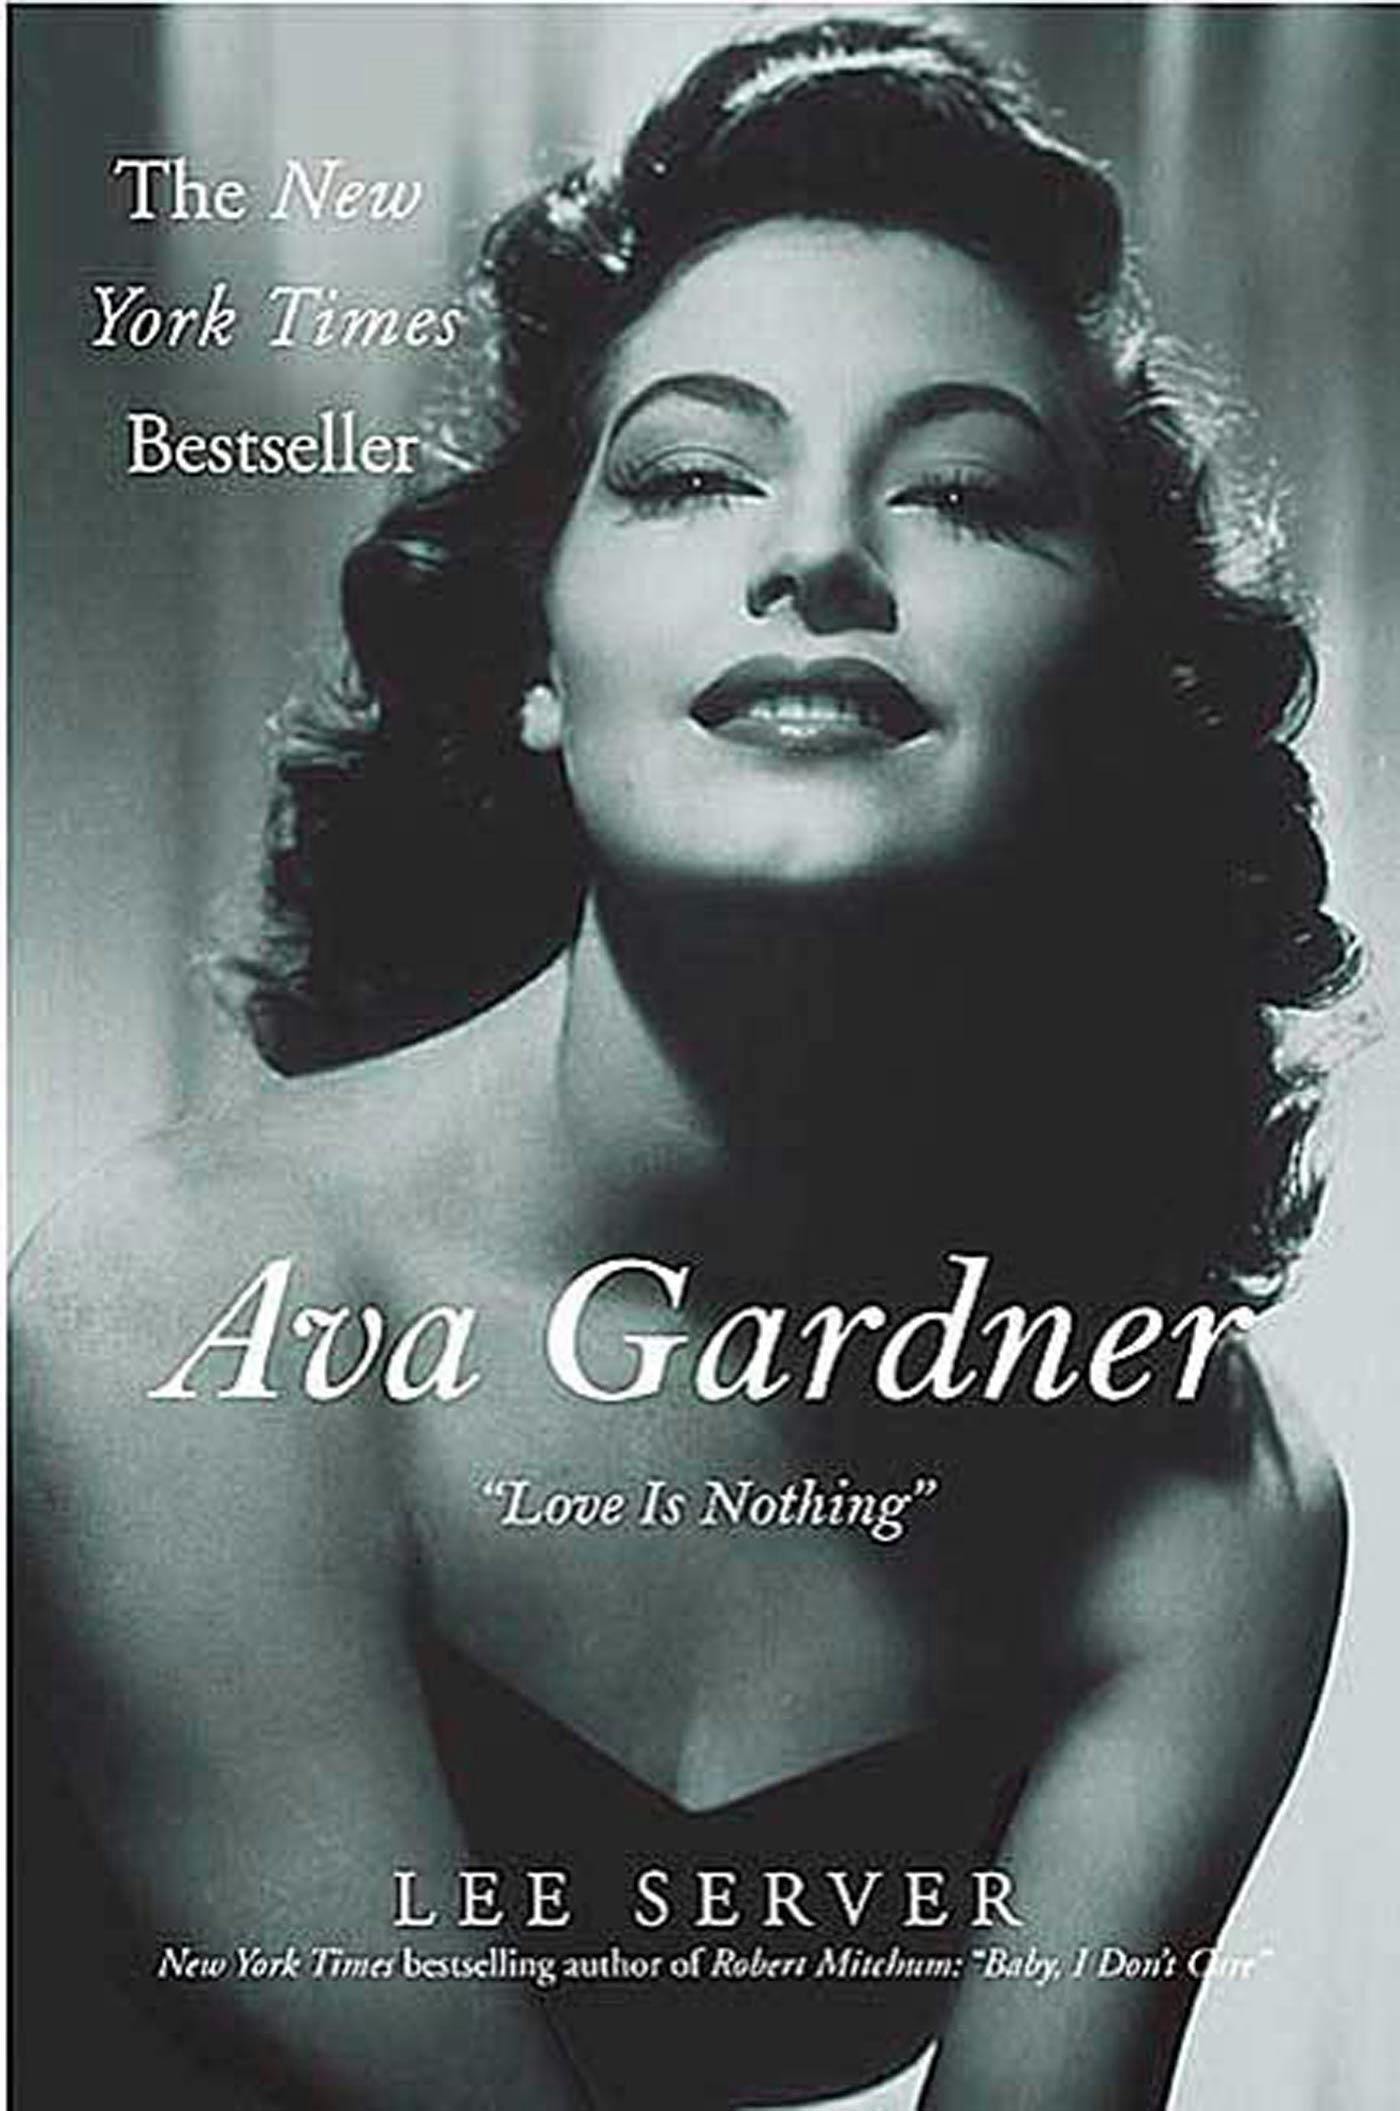 Ava Gardner picture photo